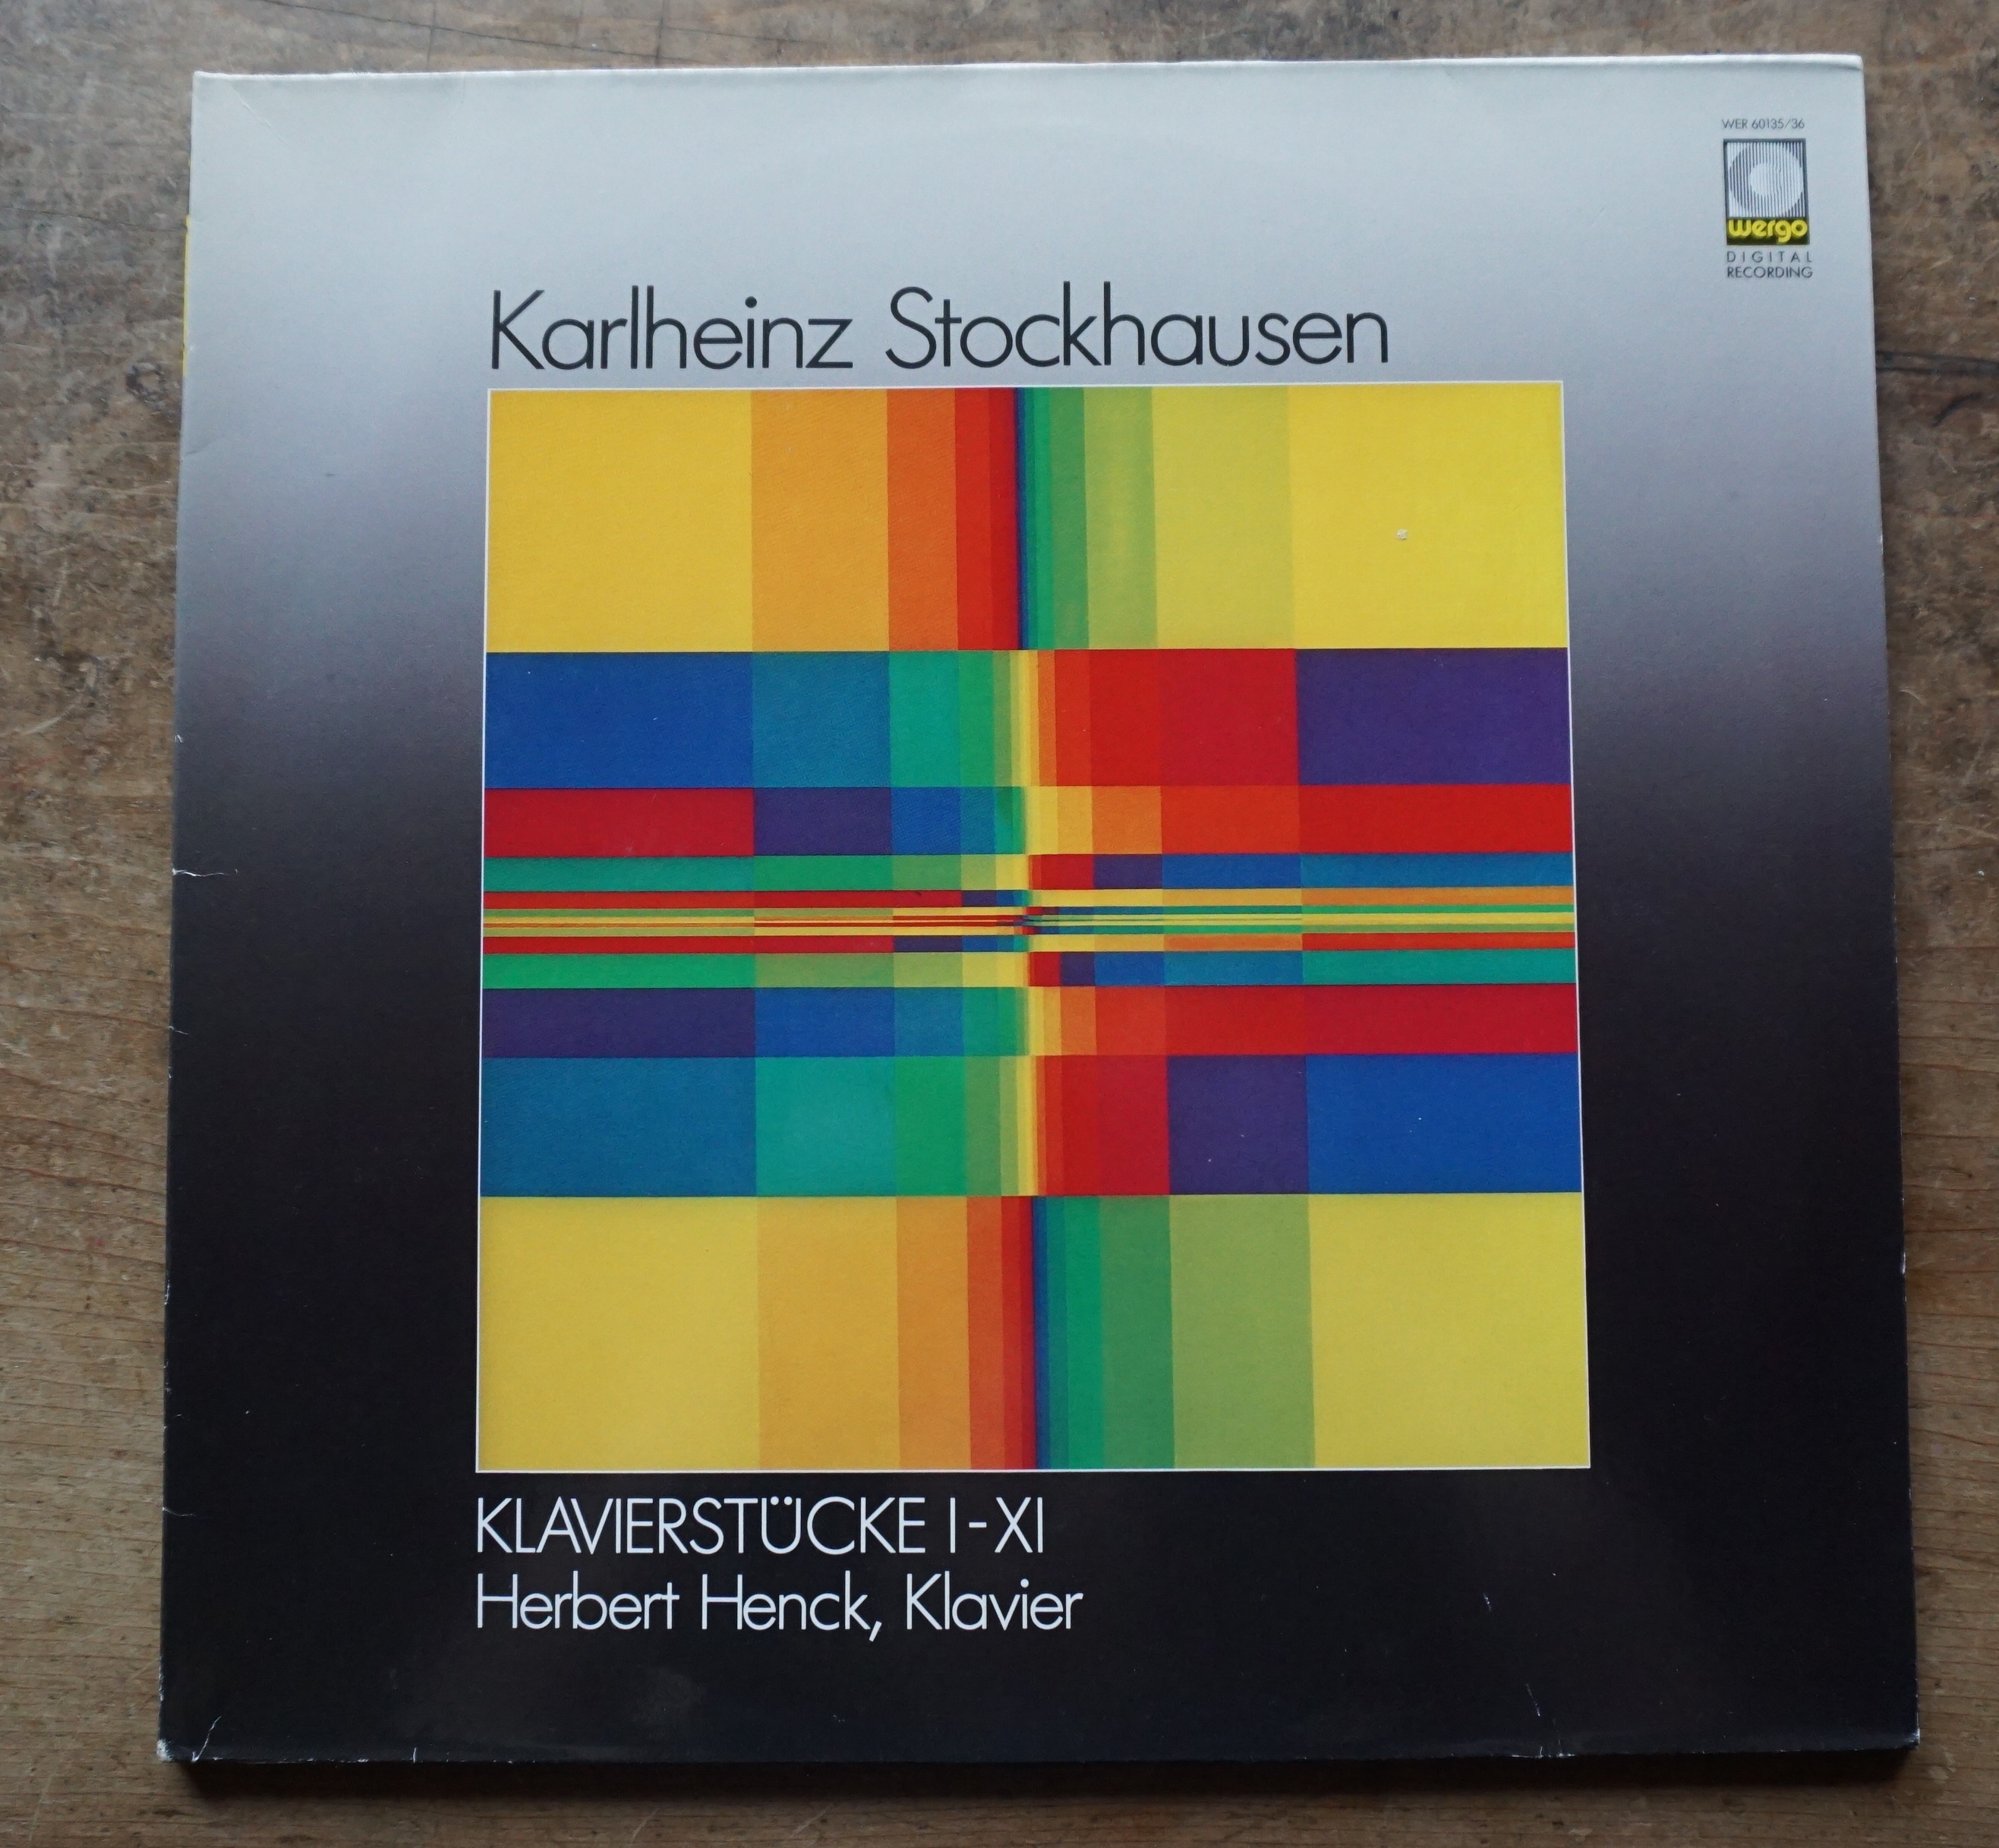 絶版lpレコード 中古 カールハインツ シュトックハウゼン Klavierstcke I Xi Karlheinz Stockhausen Telescopeart Art美術古書店